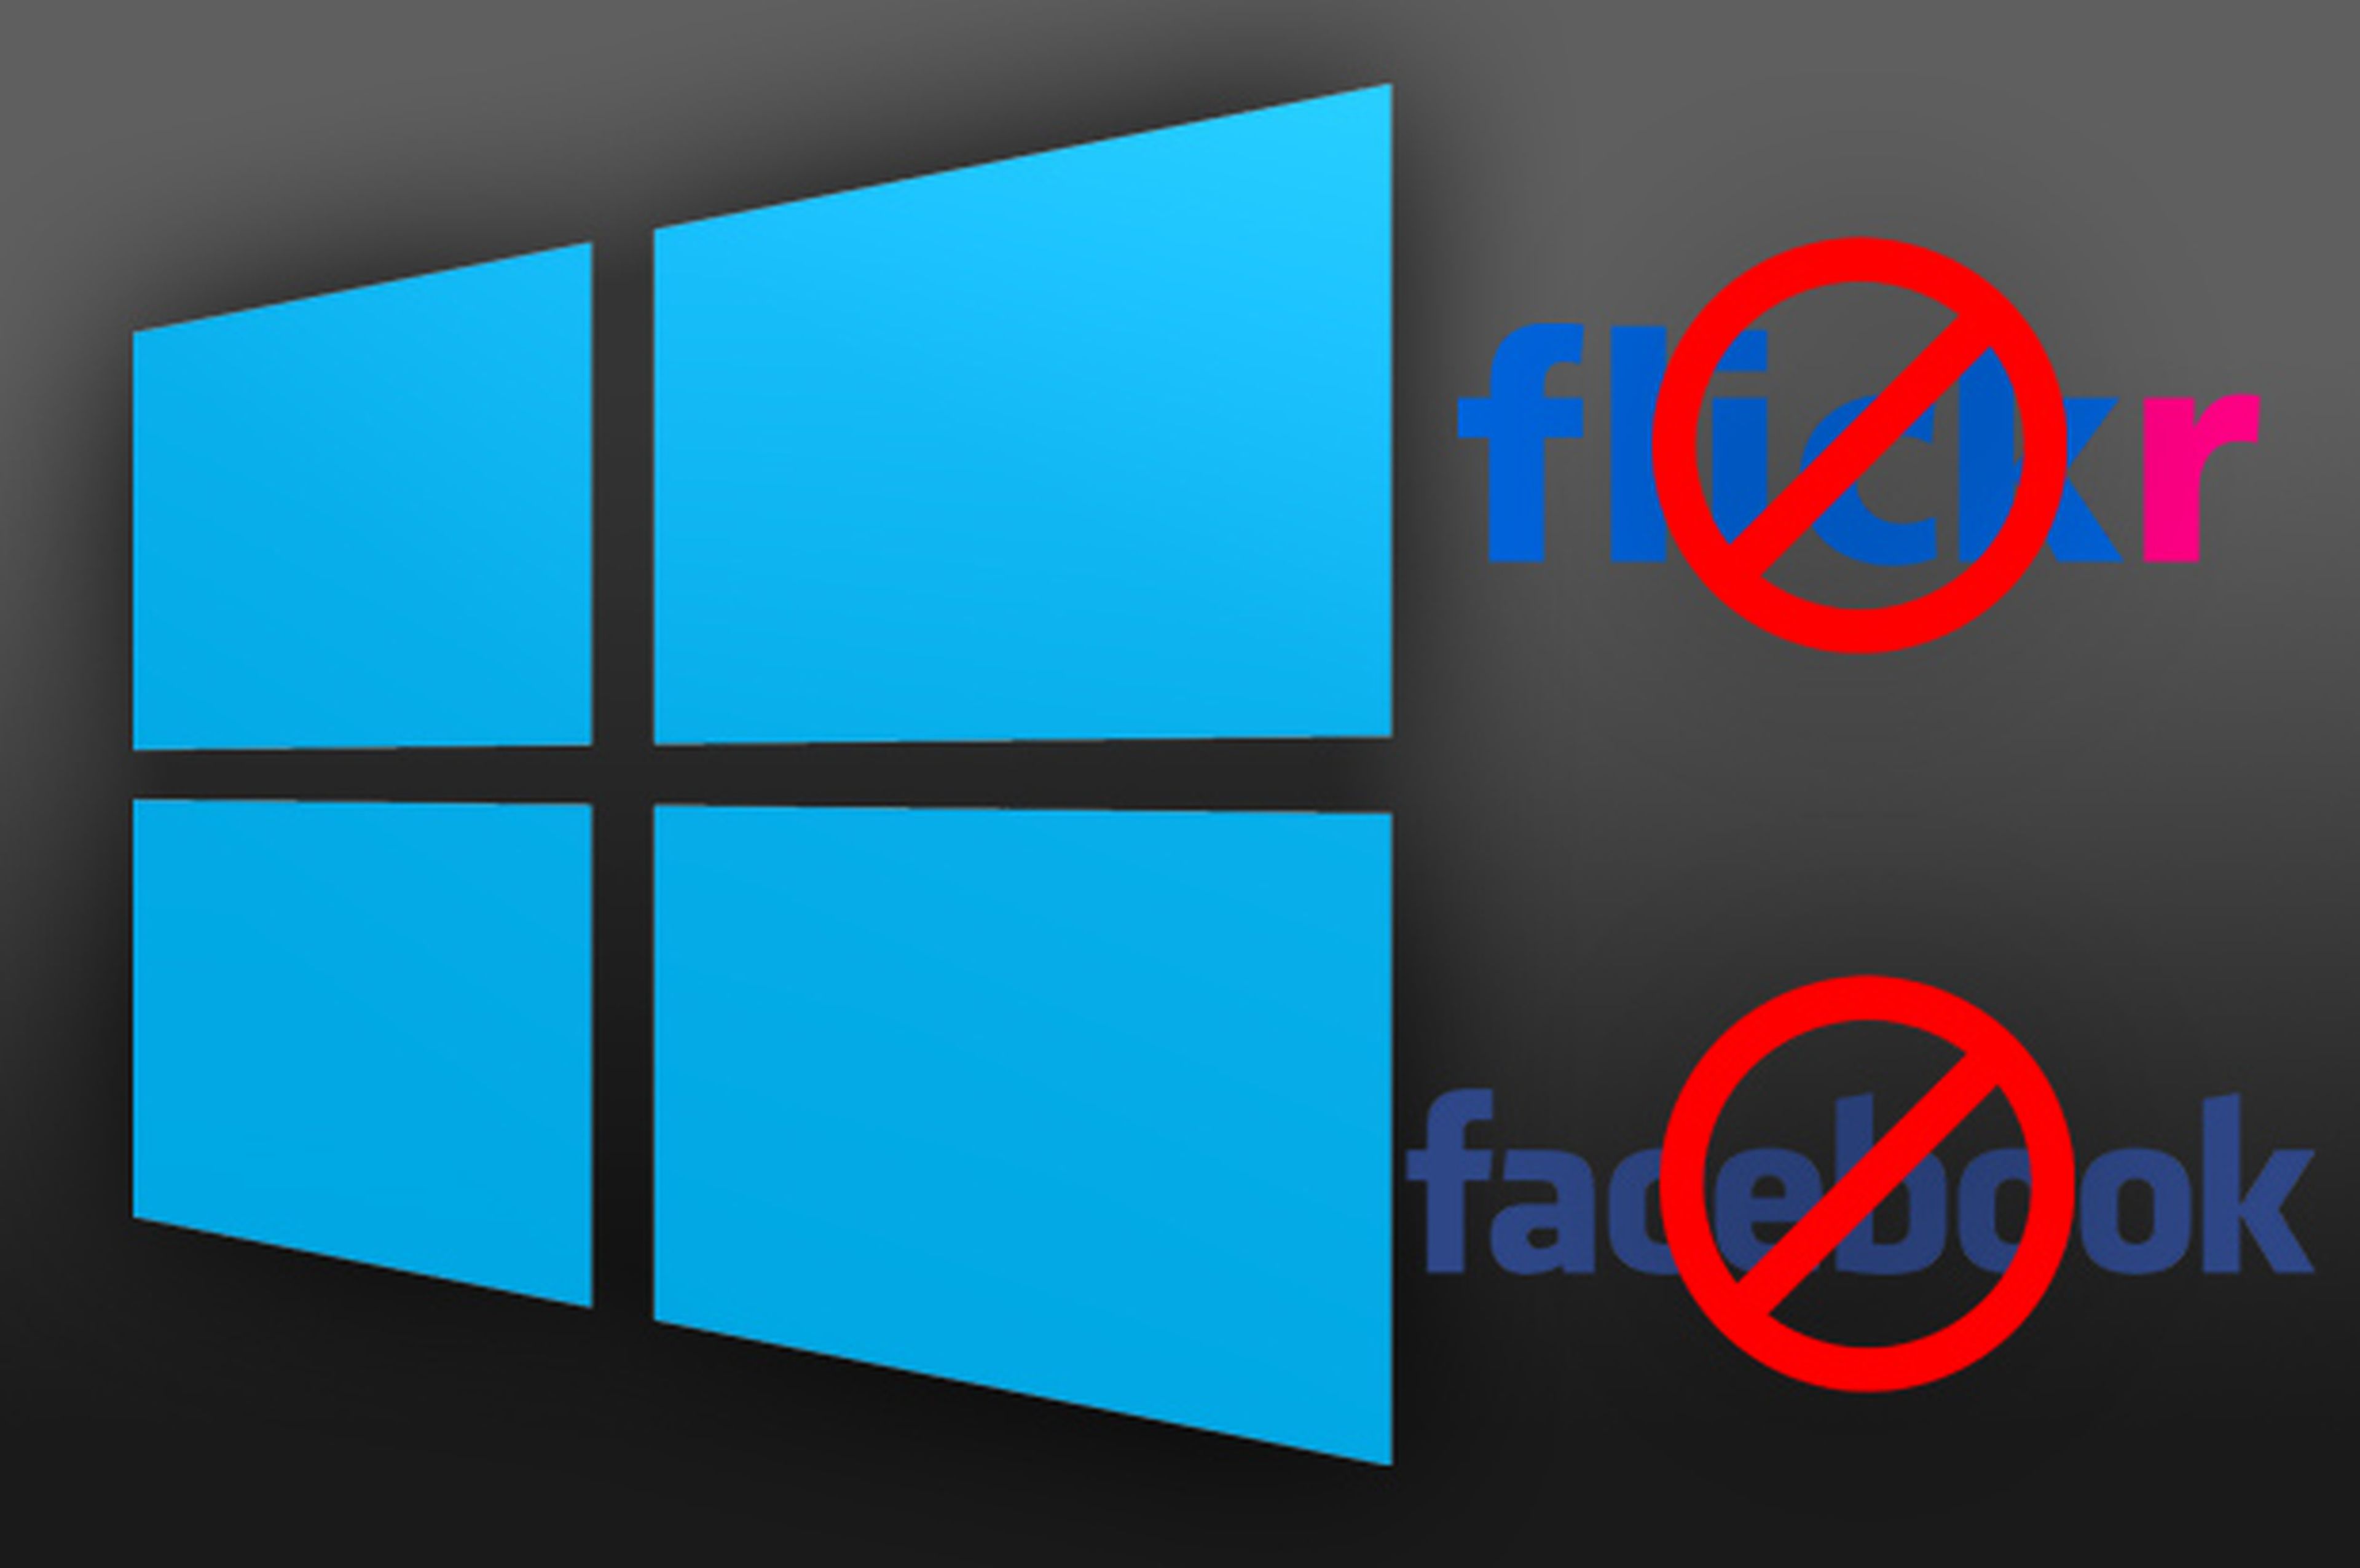 Windows 8.1 no tendrá soporte nativo para fotos de Facebook